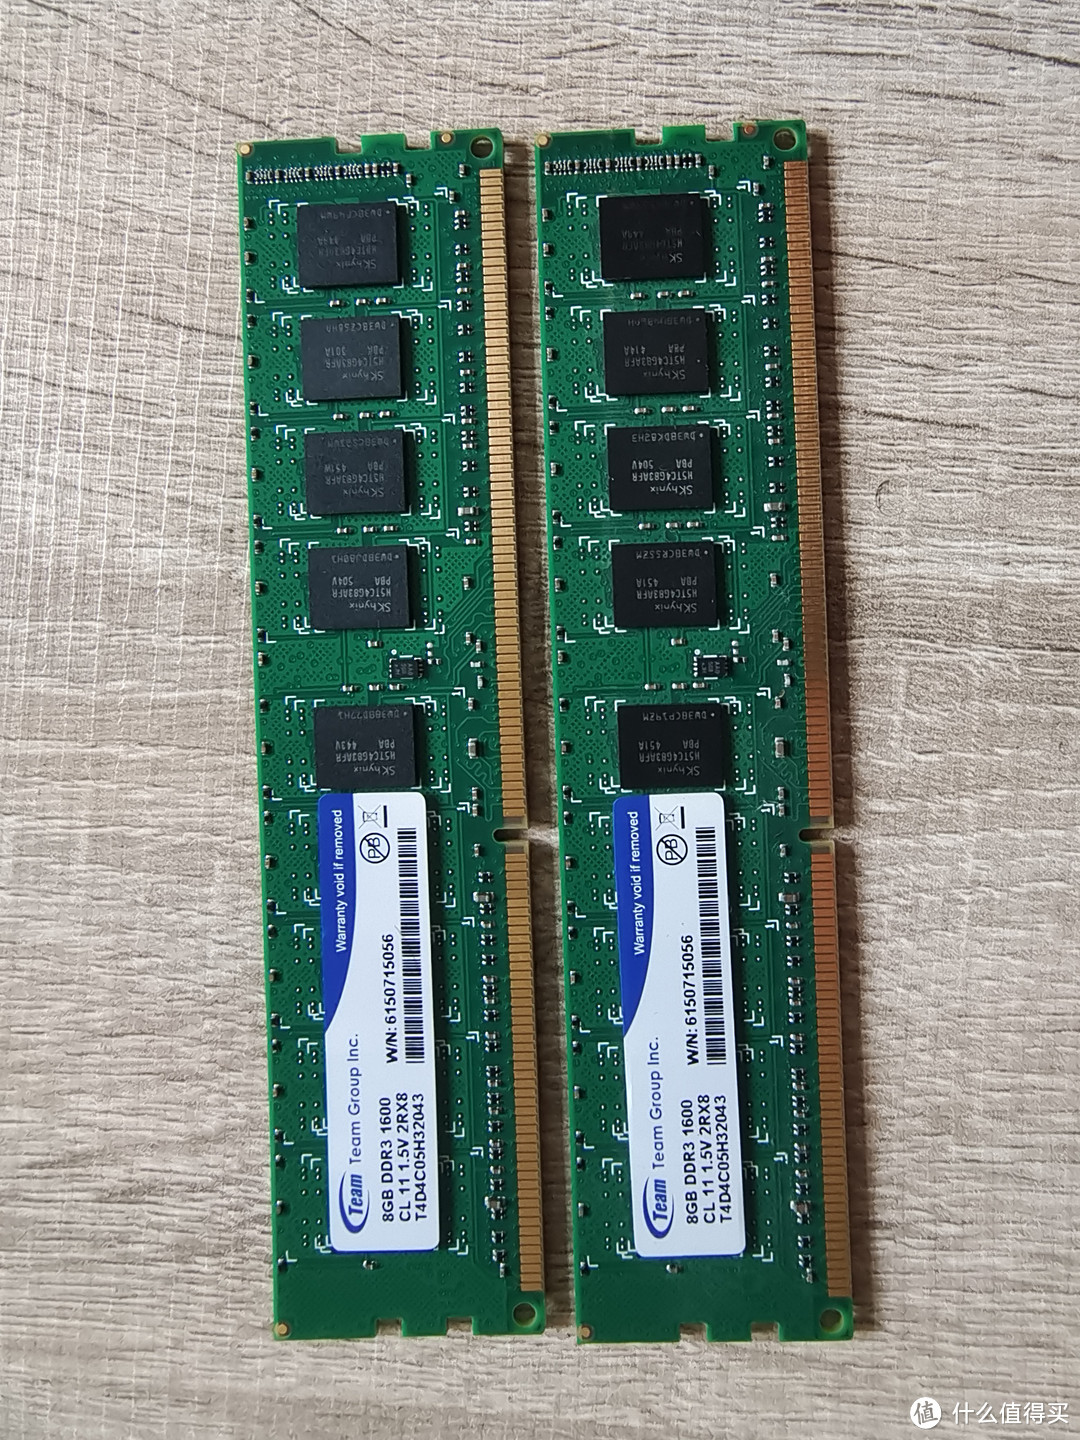 原來的 Team5 8G X2 DDR3 ECC 內存。。。 當年在香港買很貴的。。。